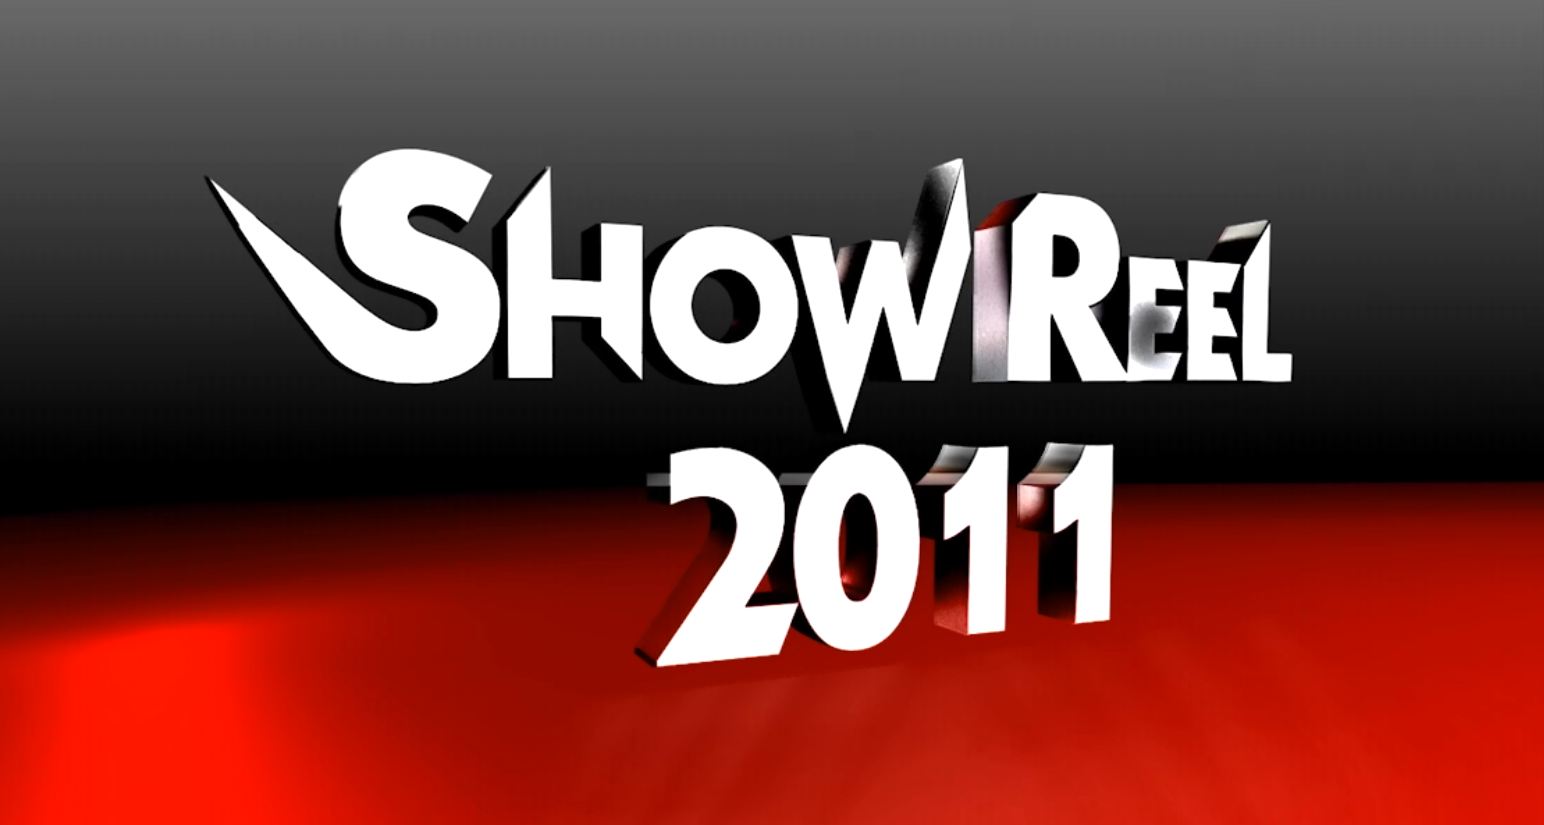 Show reel 2011